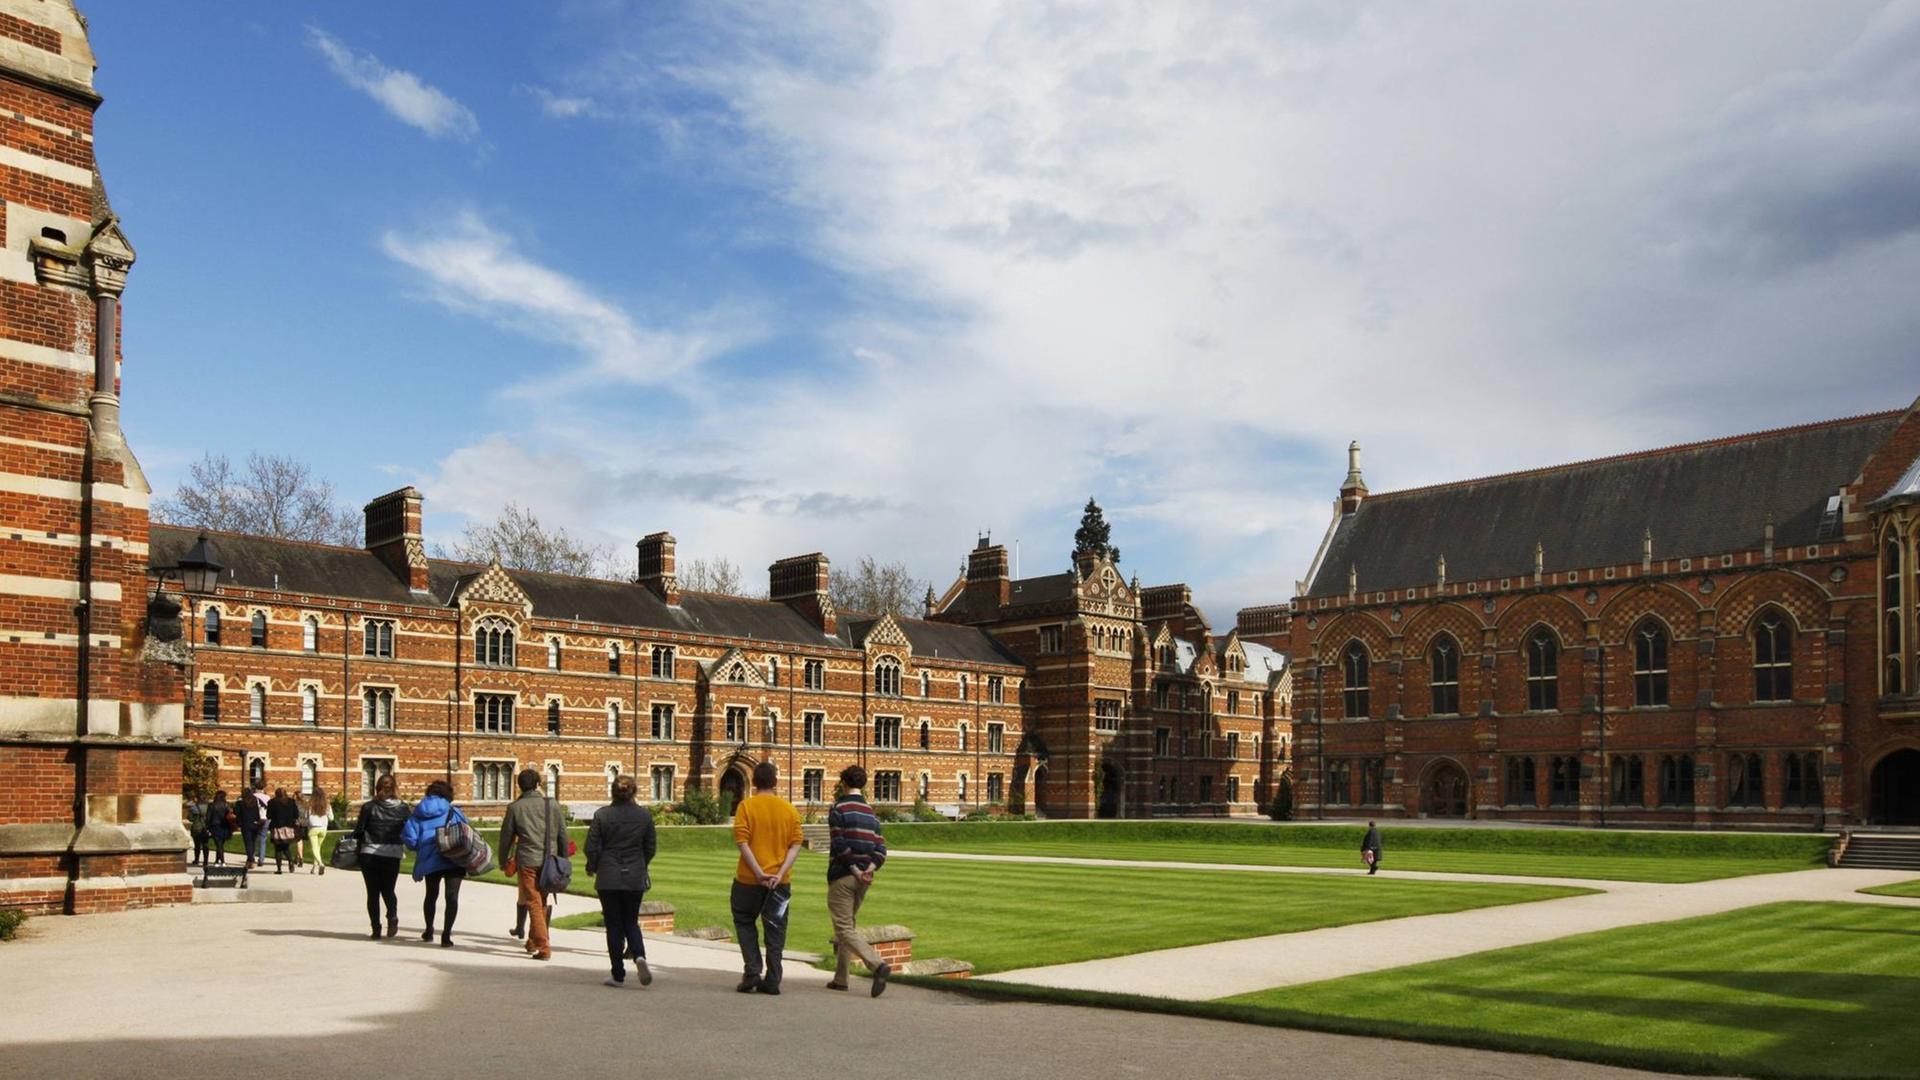 Campus des Keble College. Eines von 39 Colleges, die alle unabhängig sind und zusammen die University of Oxford bilden, 21.04.2012